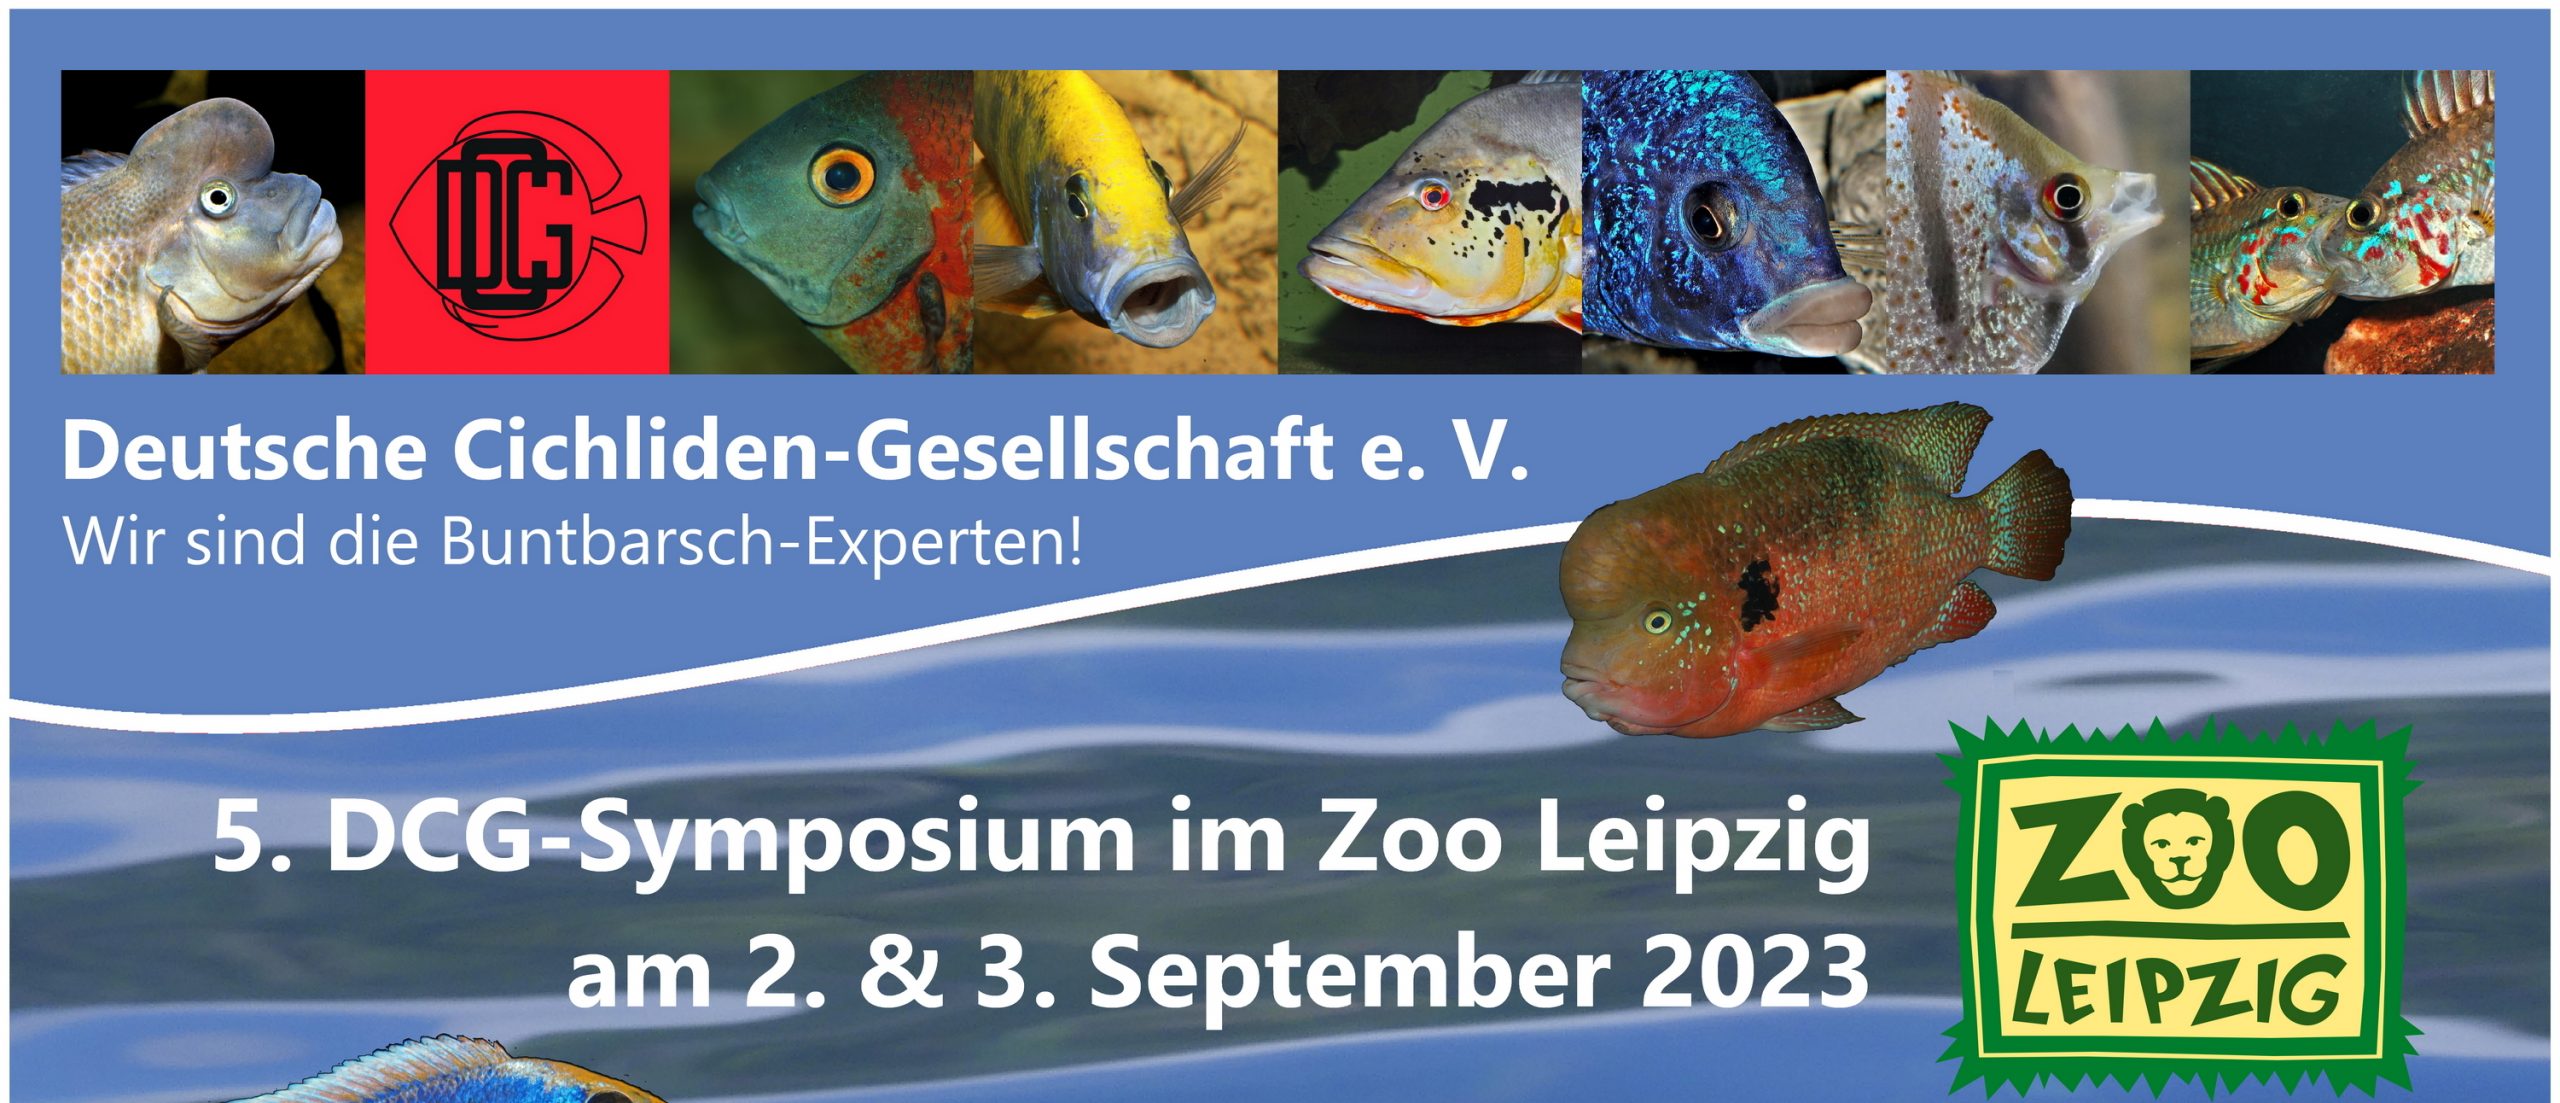 beitragsbild Druckversion für Zeitung Symposium Leipzig 02 09 2023 Poster Programm A0 ueberarbeitet 230329